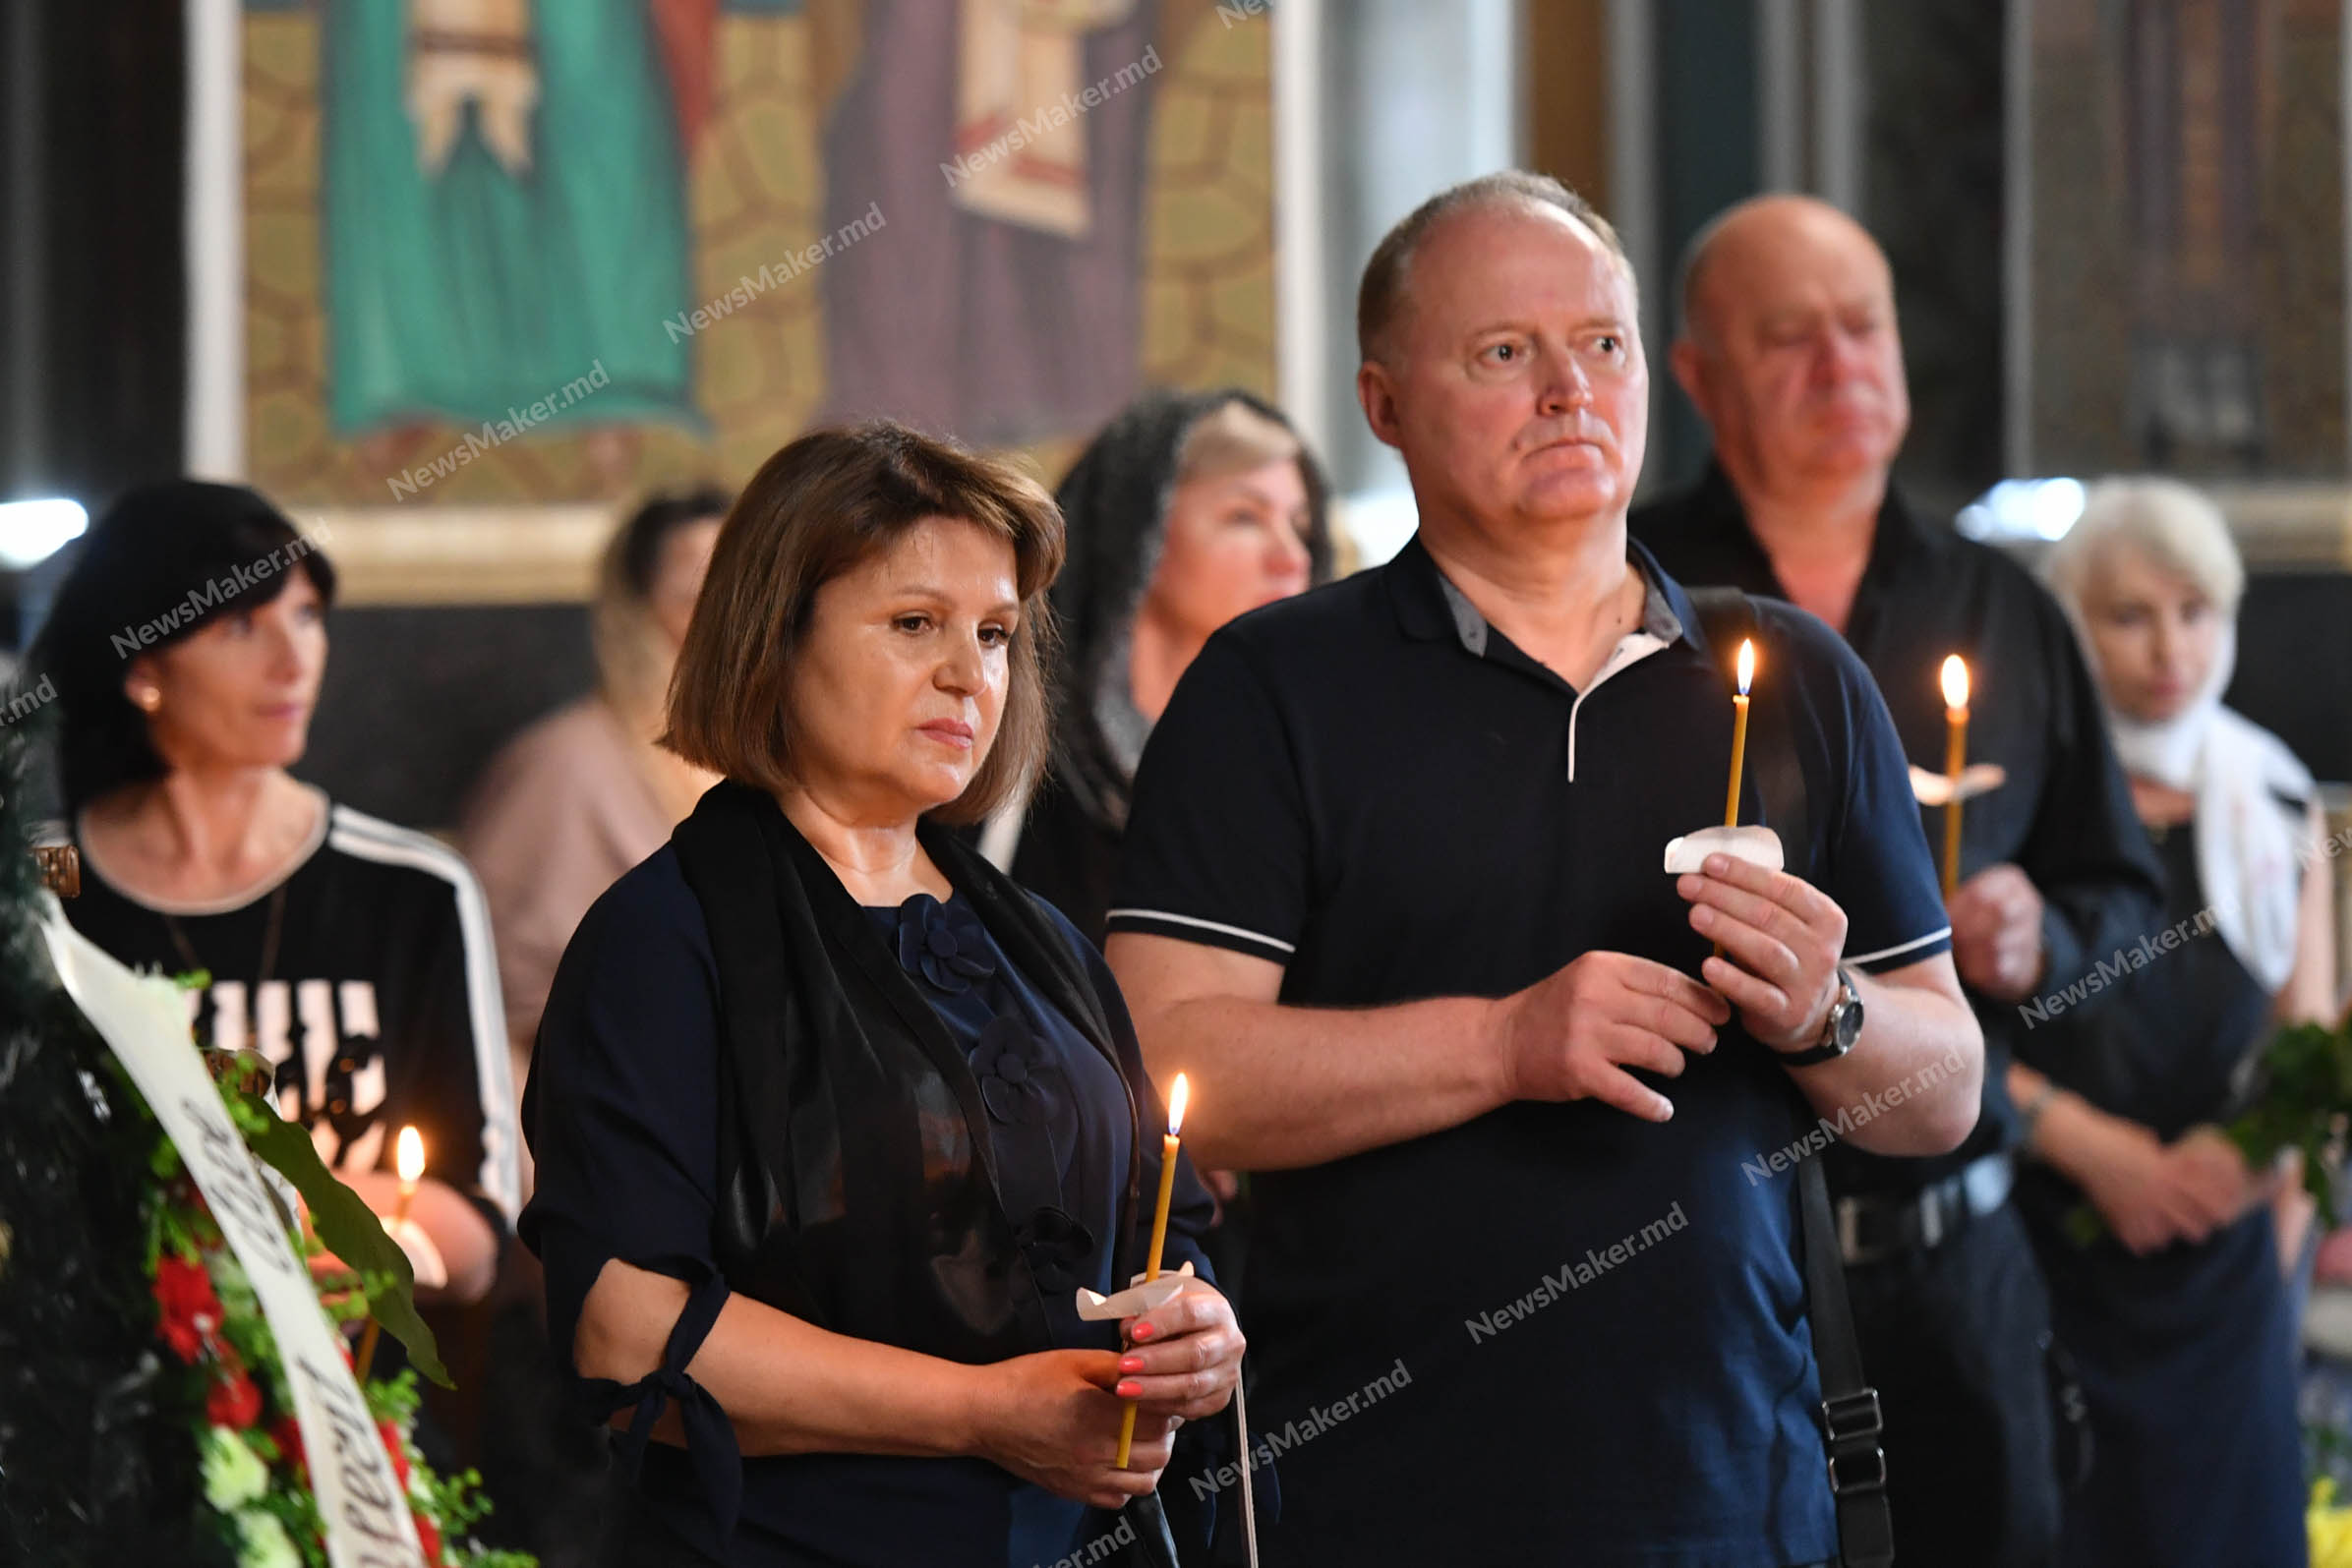 (ФОТО) В Кишиневе прошла церемония прощания с Вангели и траурный марш. Фоторепортаж NM